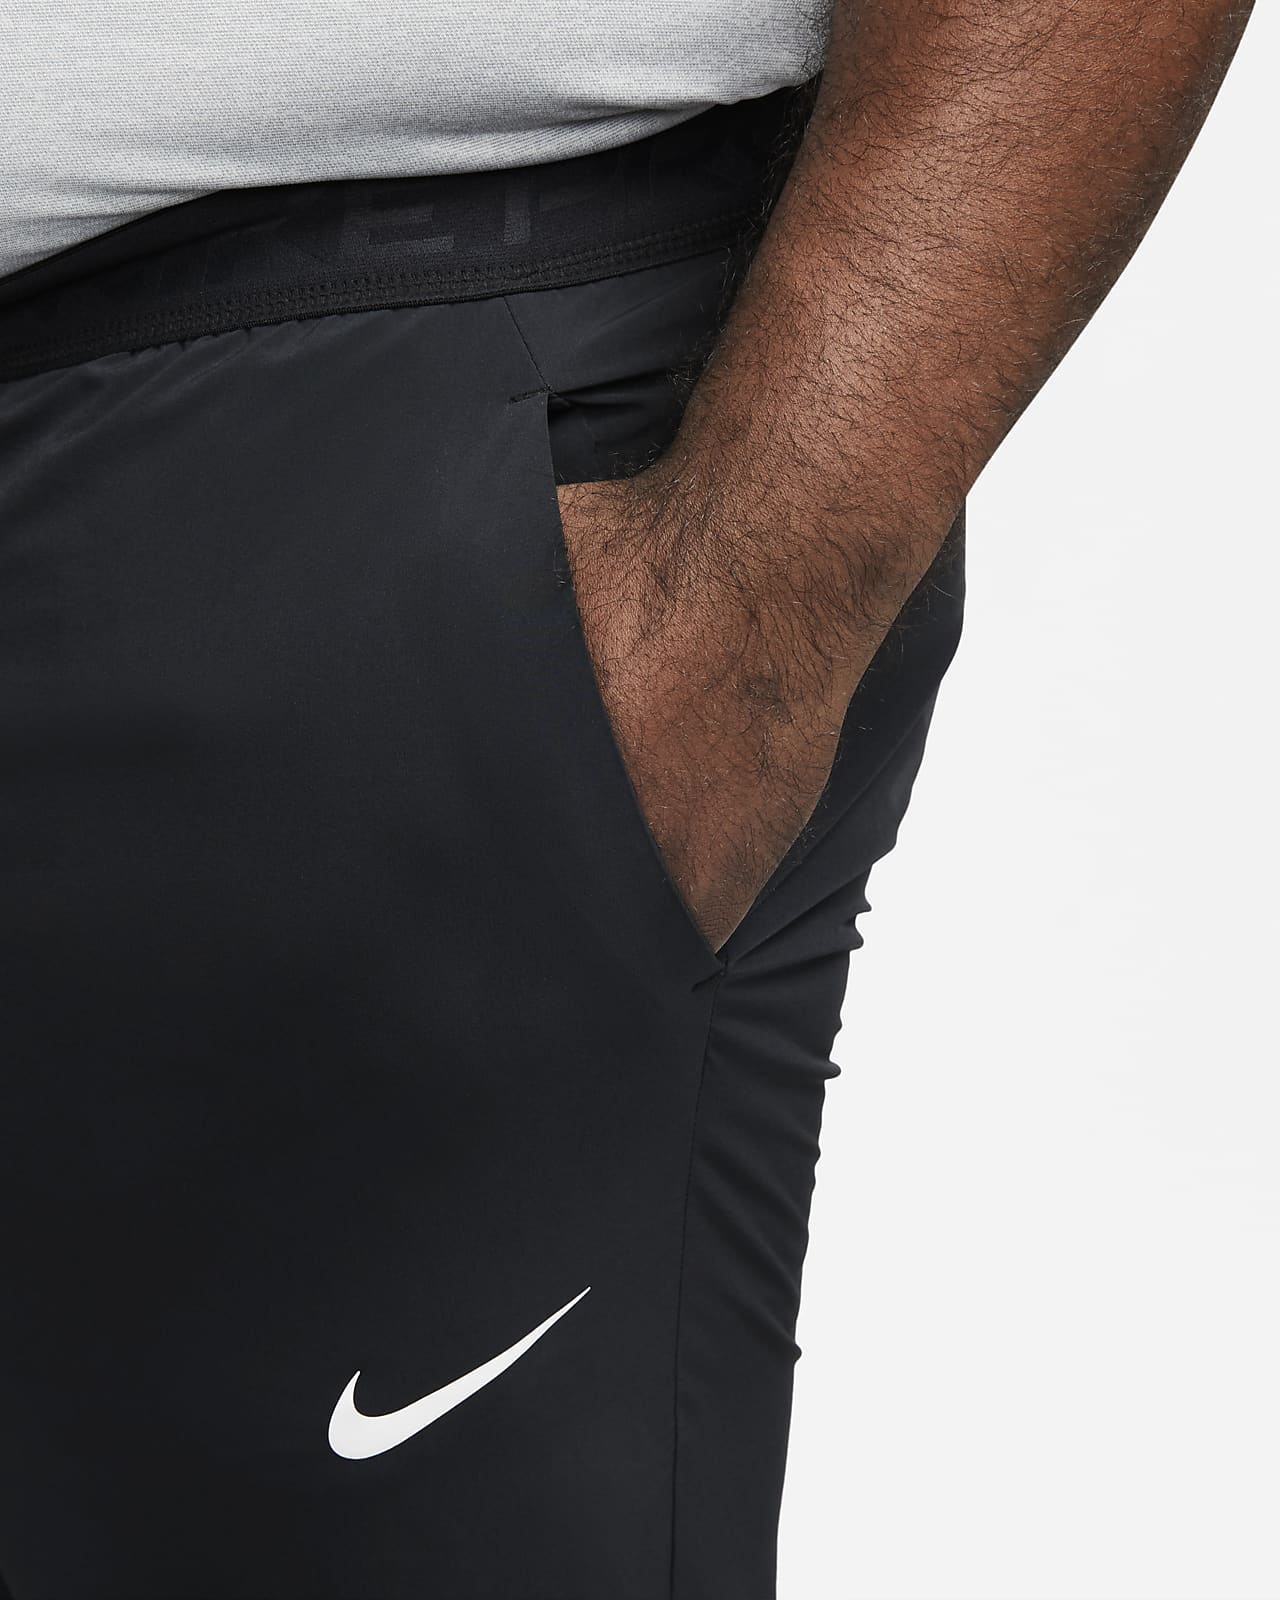 Nike Flex Mens Training Trousers  Black  CJ2218010  FOOTYCOM